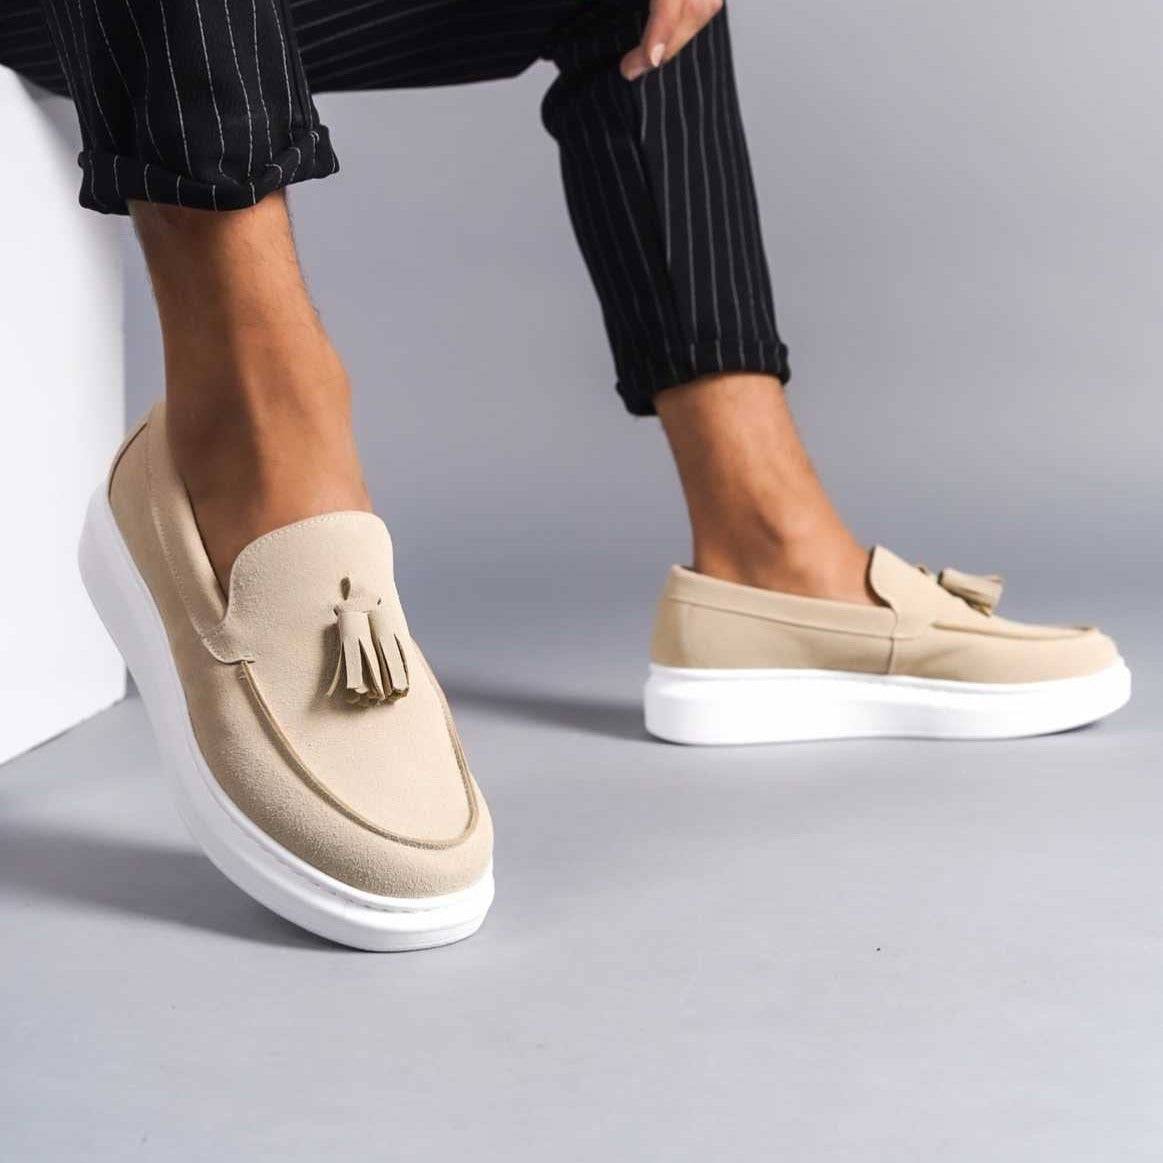 Men's Classic Fashionable Loafers by Apollo Moda | Paris Desert Dream